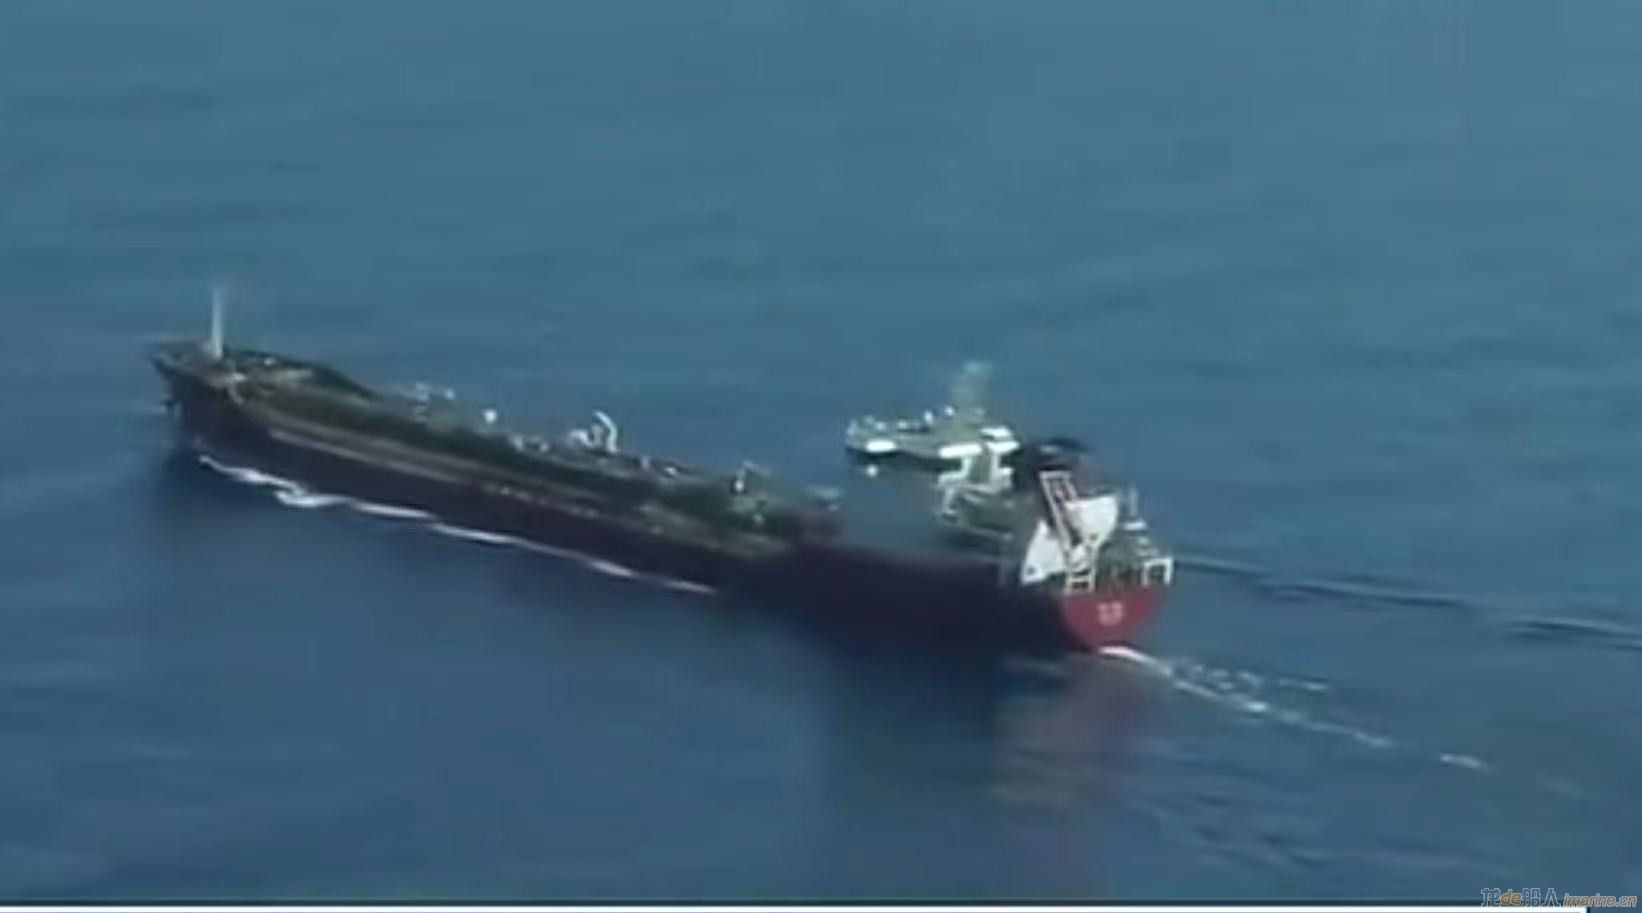 [航运]一艘偷渡船在地中海沉没 约20人死亡或失踪,